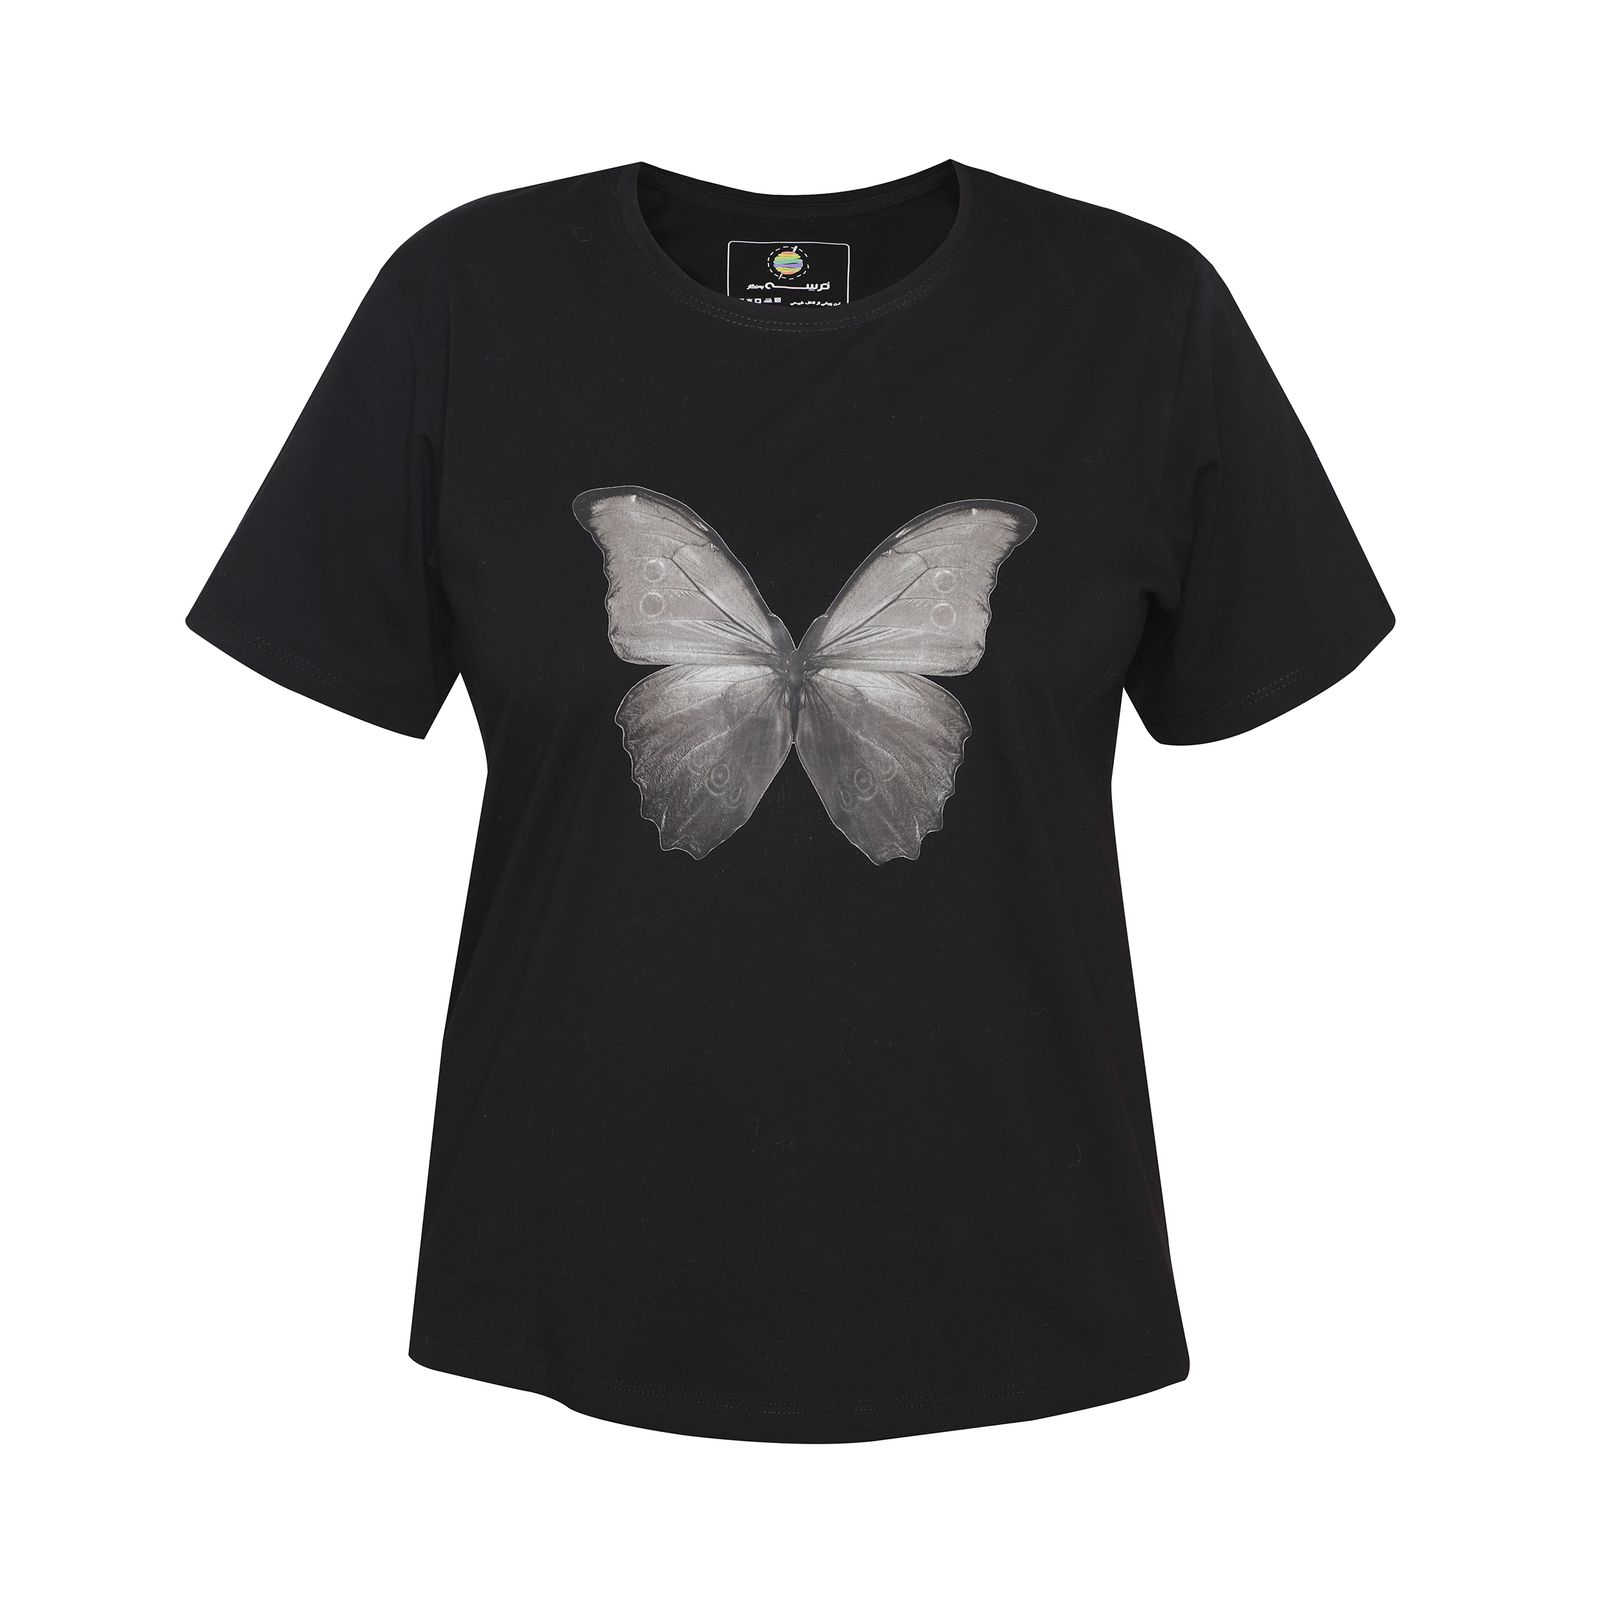 تی شرت آستین کوتاه زنانه ترسه به نگار طرح پروانه کد 180 -  - 1